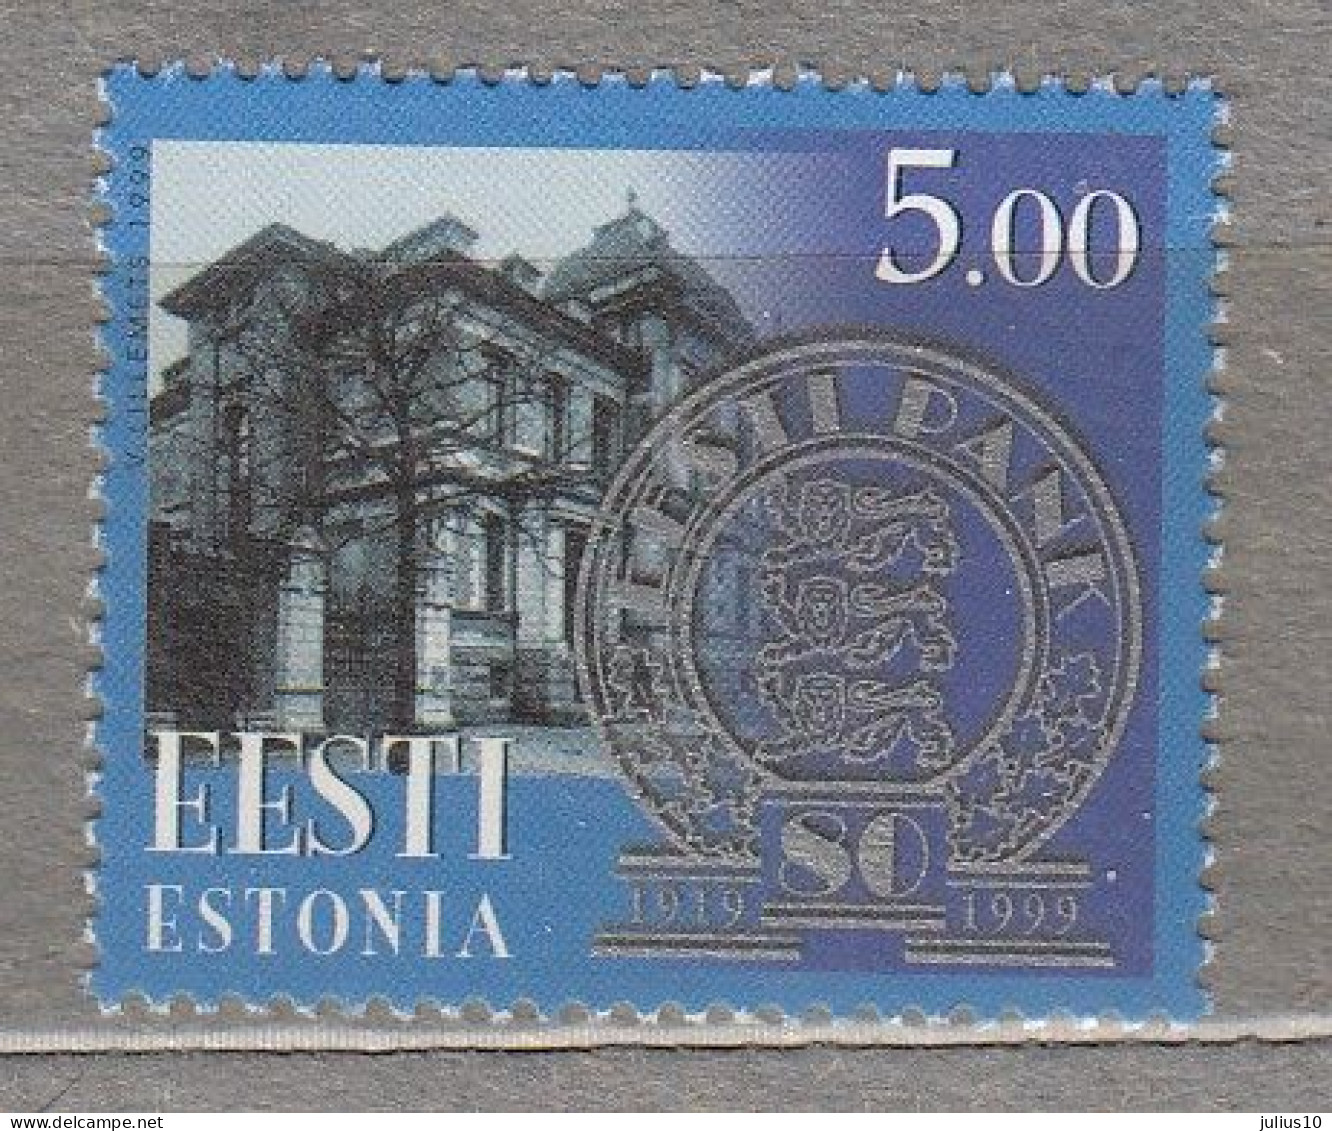 ESTONIA 1999 National Bank MNH(**) Mi 344 # Est330 - Estonia